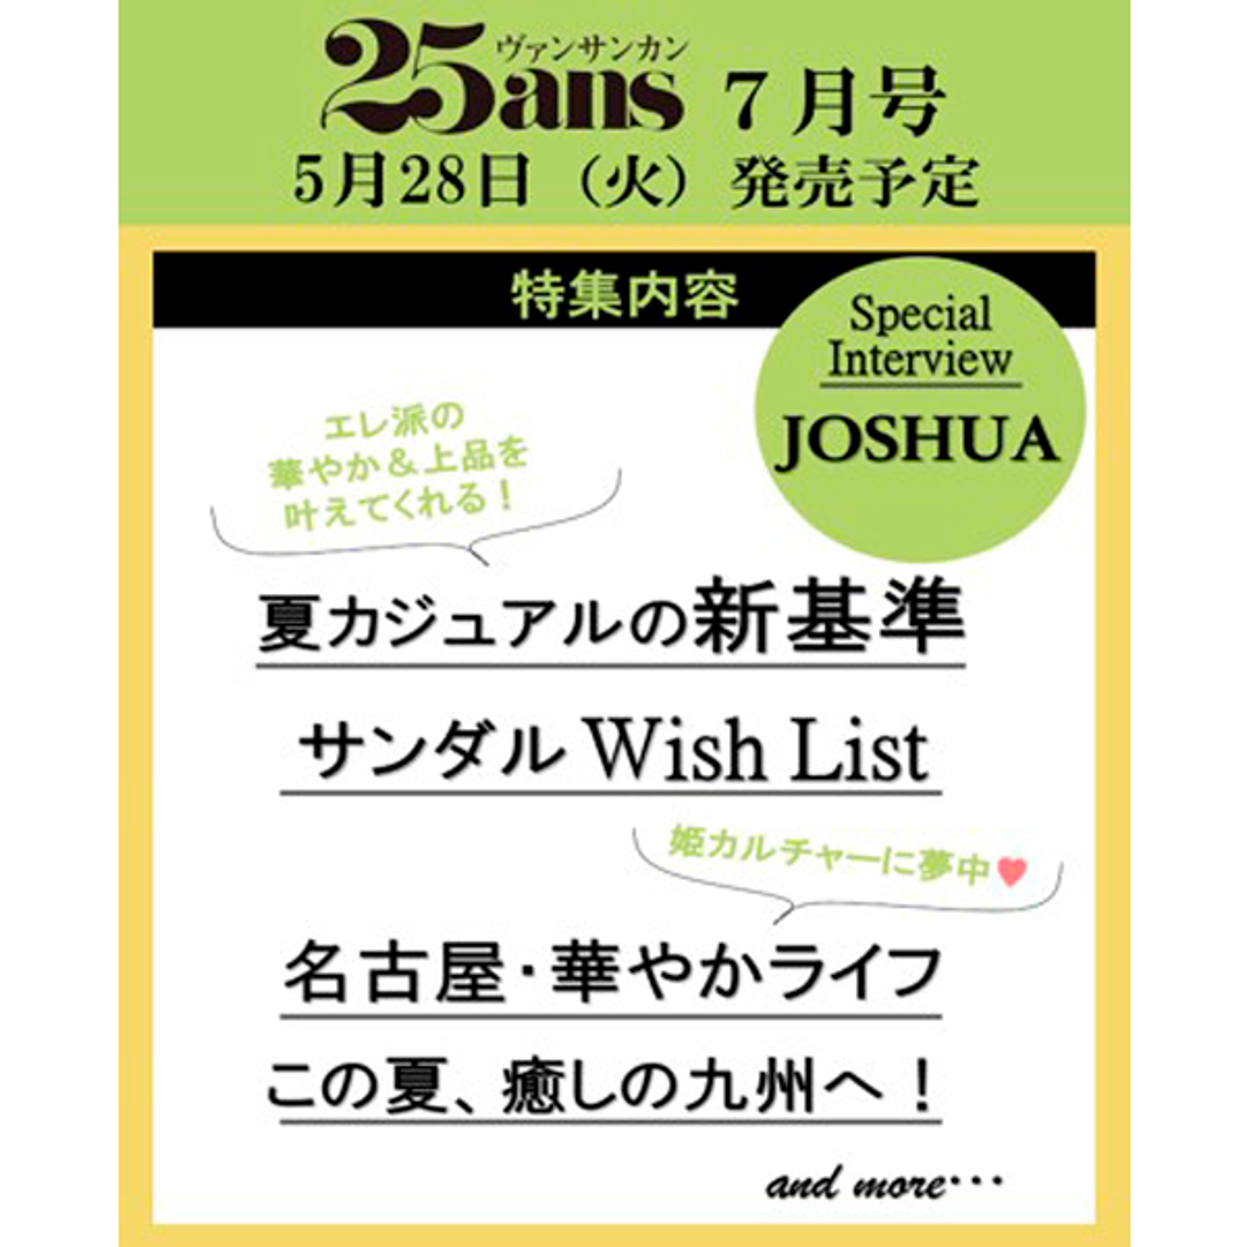 7월호 25ans 일본반 특별호 A형 (표지 : 세븐틴 : 조슈아) (일본잡지)